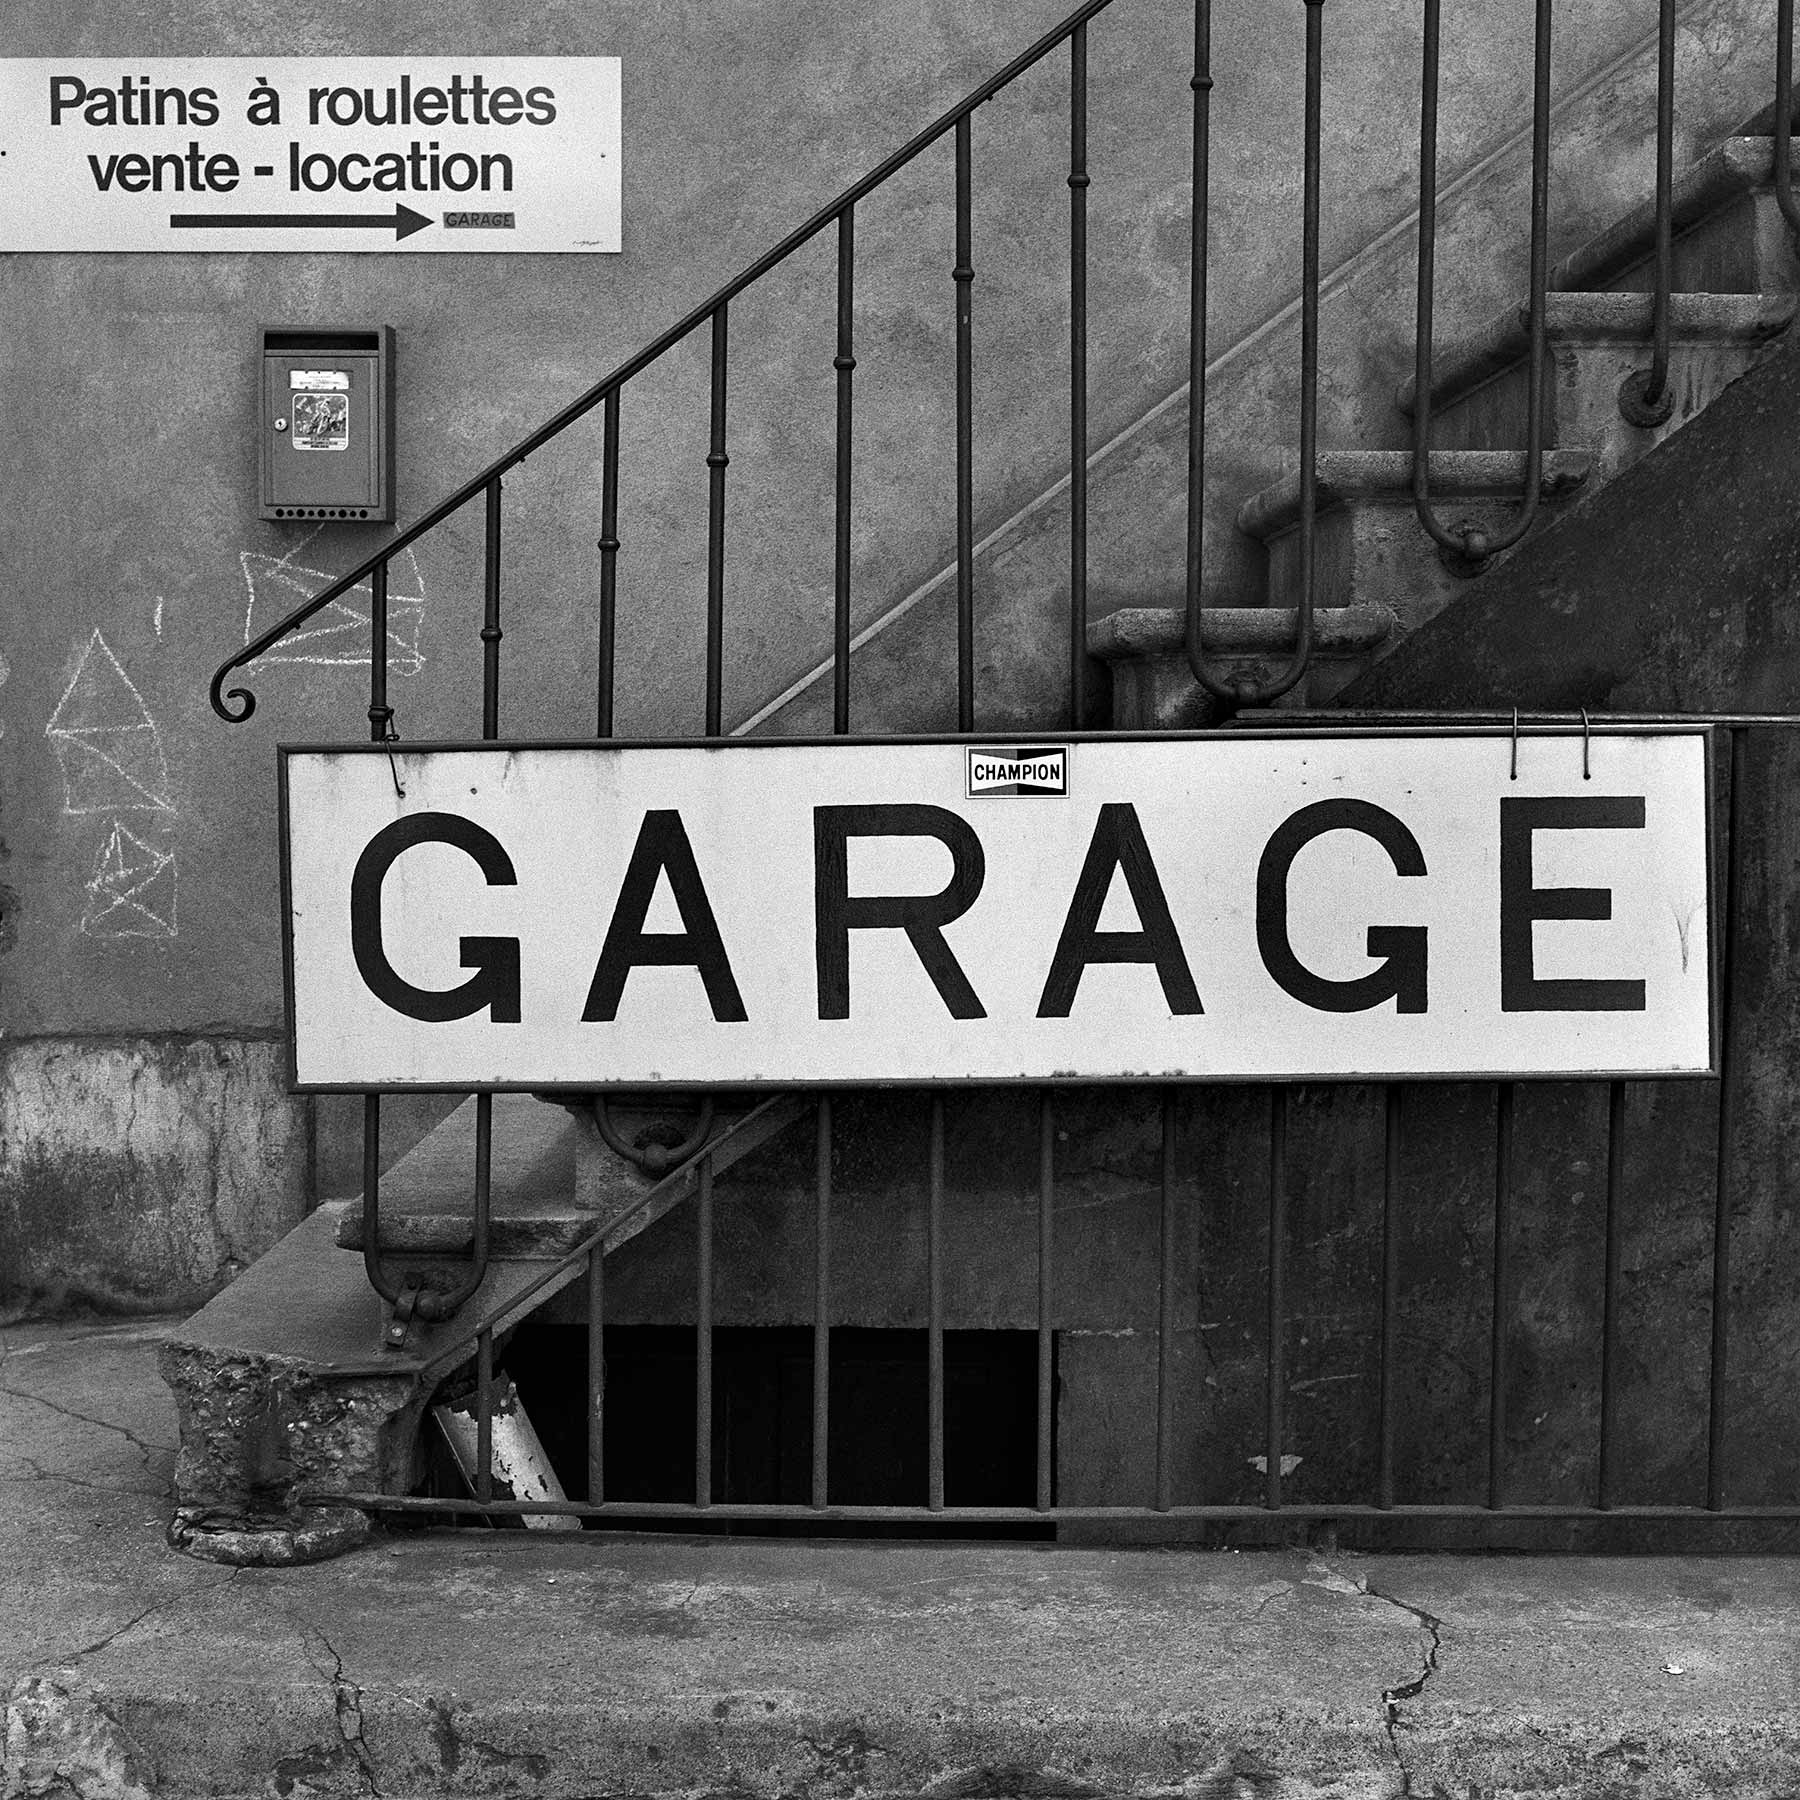 Enseigne de garage – Les Eaux-Vives, Genève, Suisse, 1981